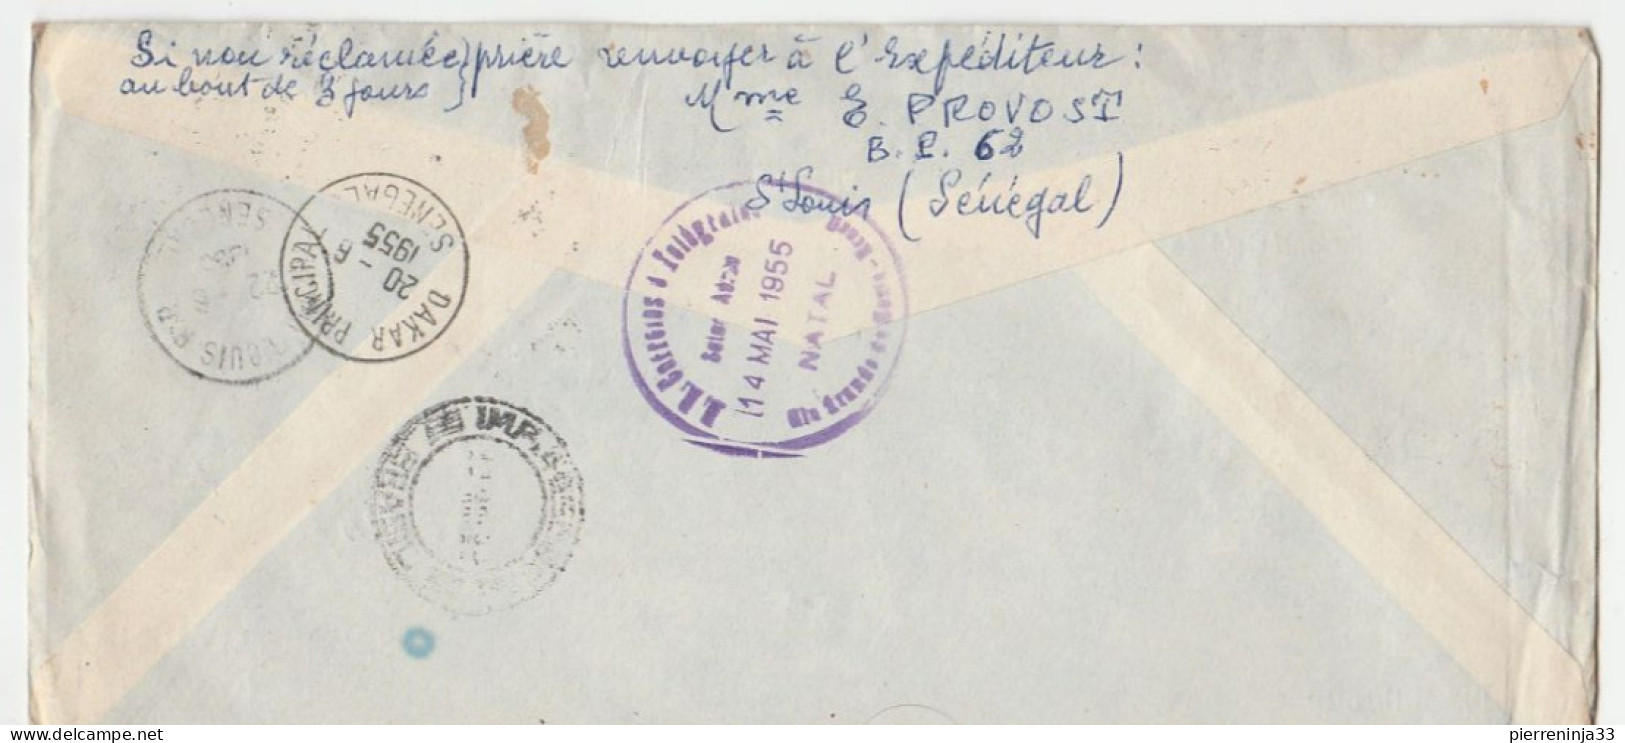 Lettre Recommandée St Louis Du Sénégal/ Liaison Postale Aérienne St Louis Natal/Brésil - Storia Postale